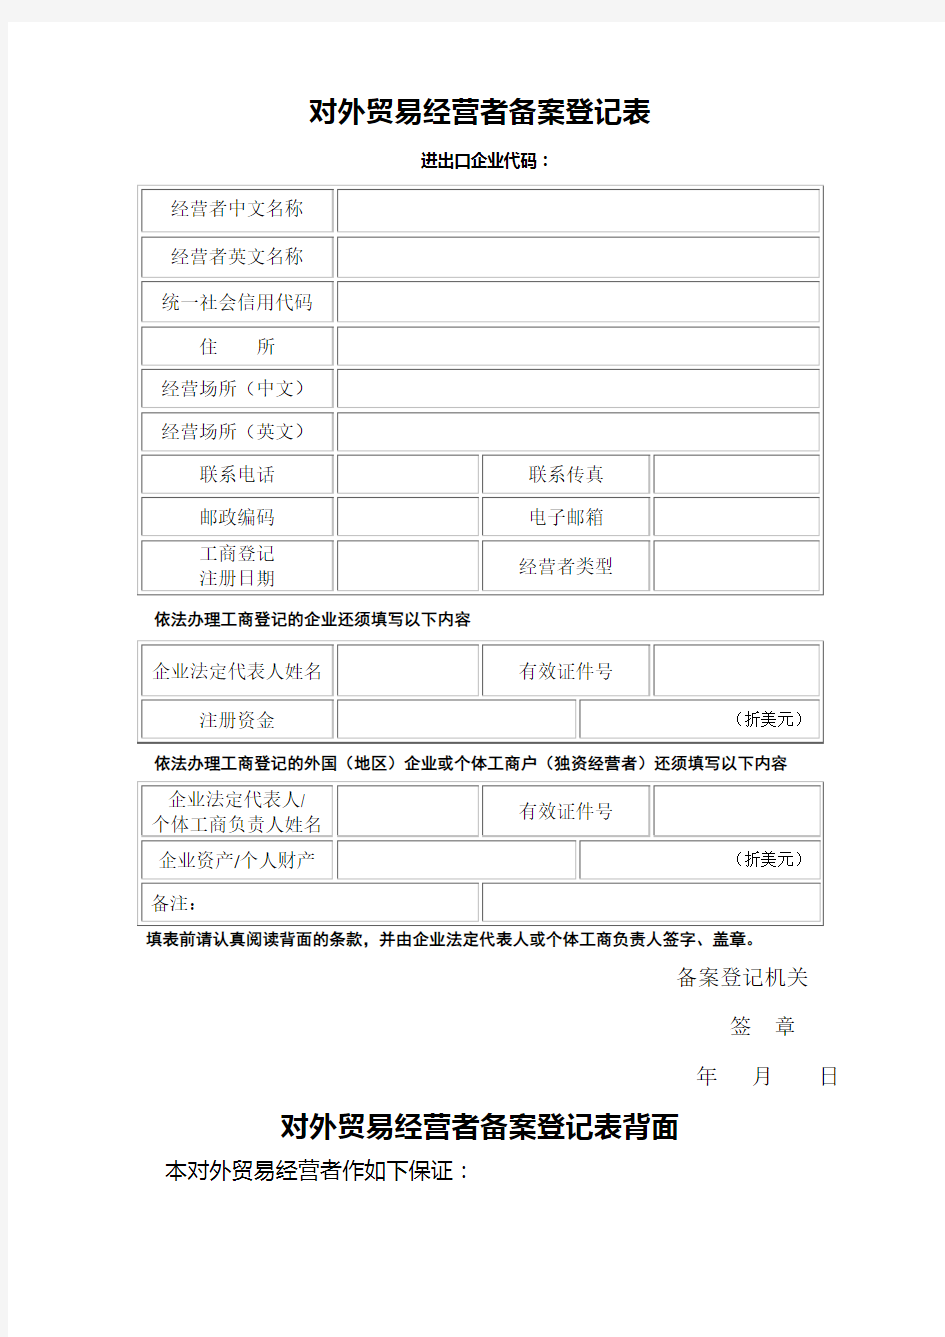 西安市商务局对外贸易经营者备案登记表 (1)